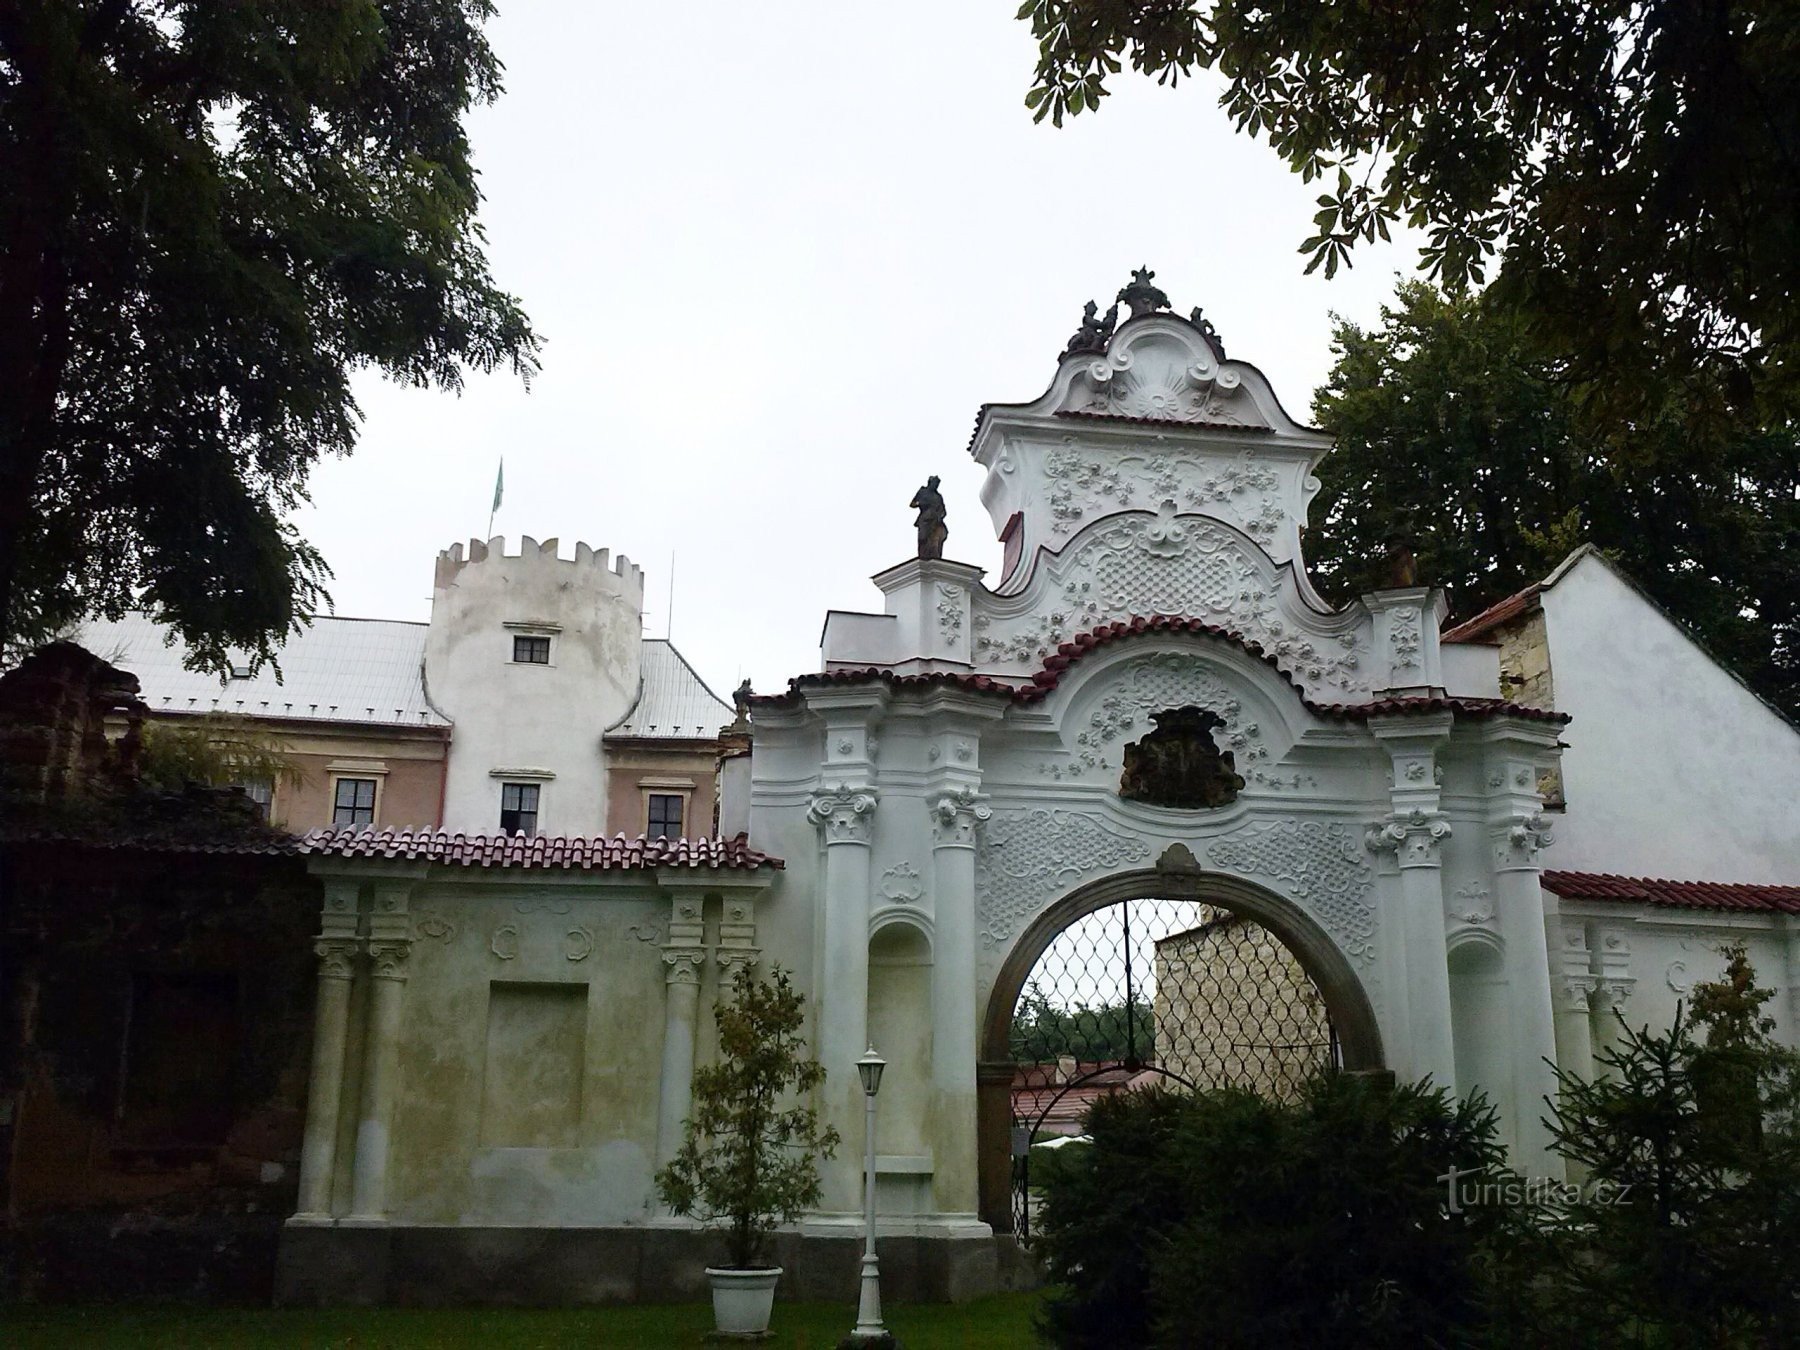 1. Lối vào cổng rococo của lâu đài